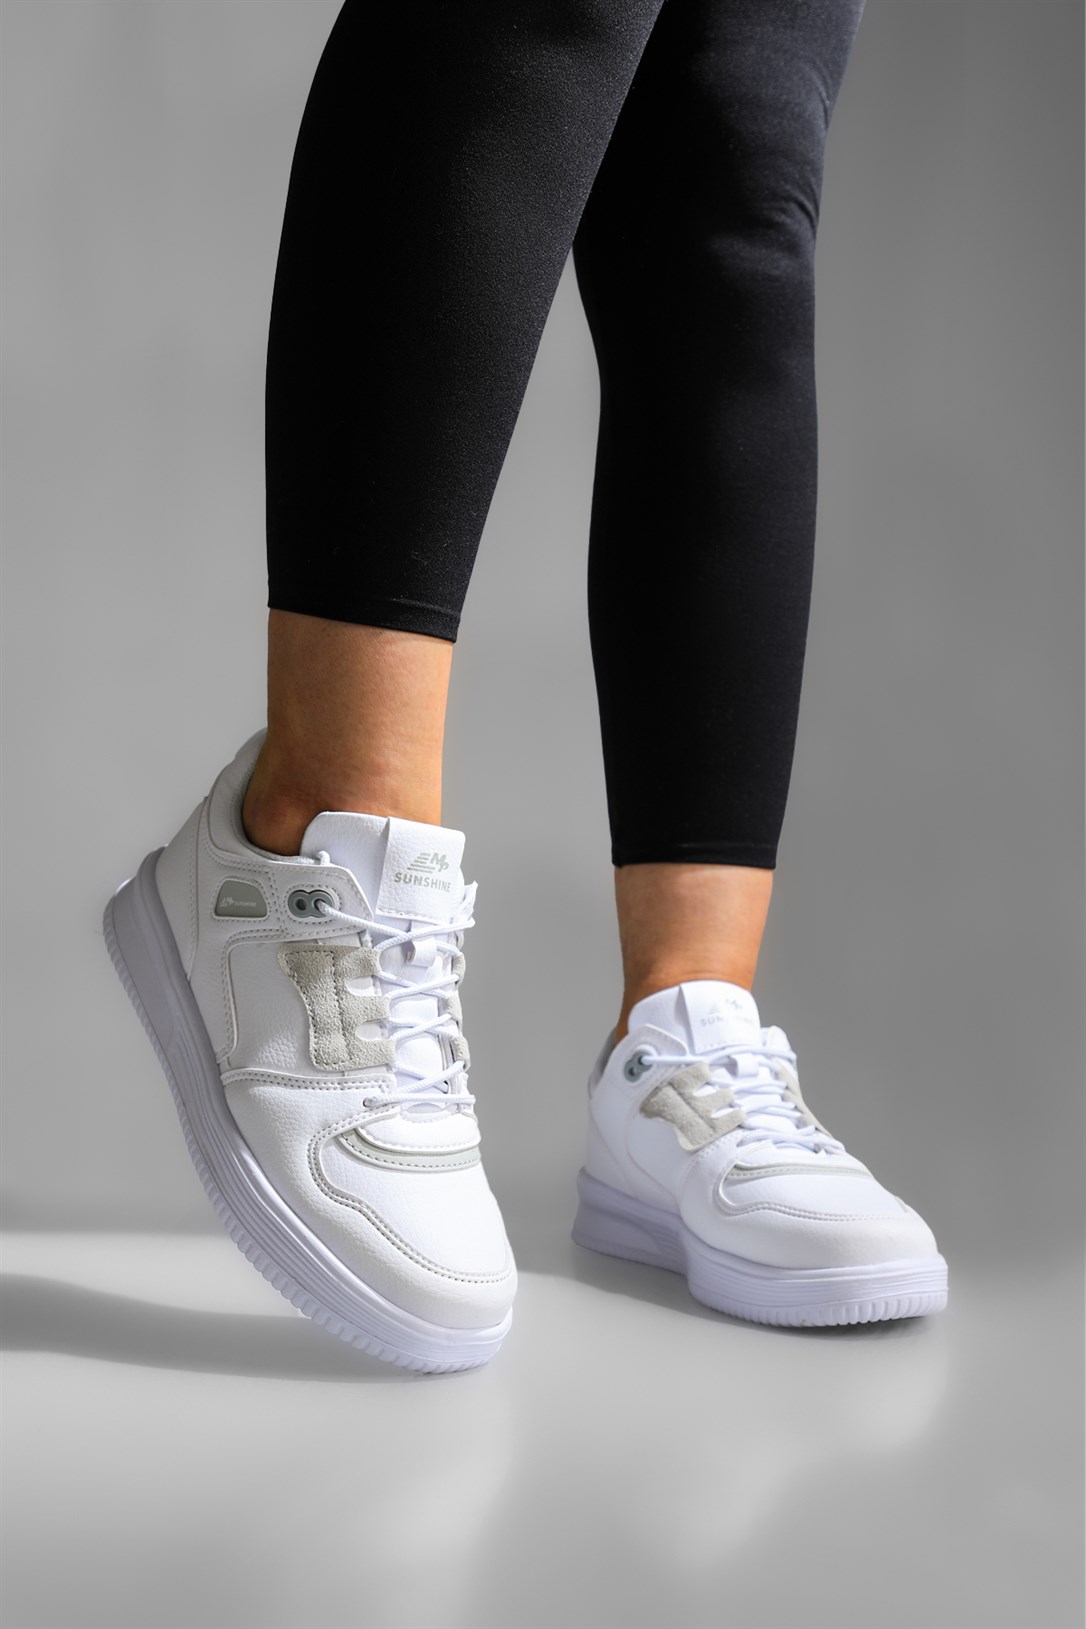 M.P Günlük Rahat Sneaker Beyaz Kadın Spor Ayakkabı 222-2722 | Ayakkabı City